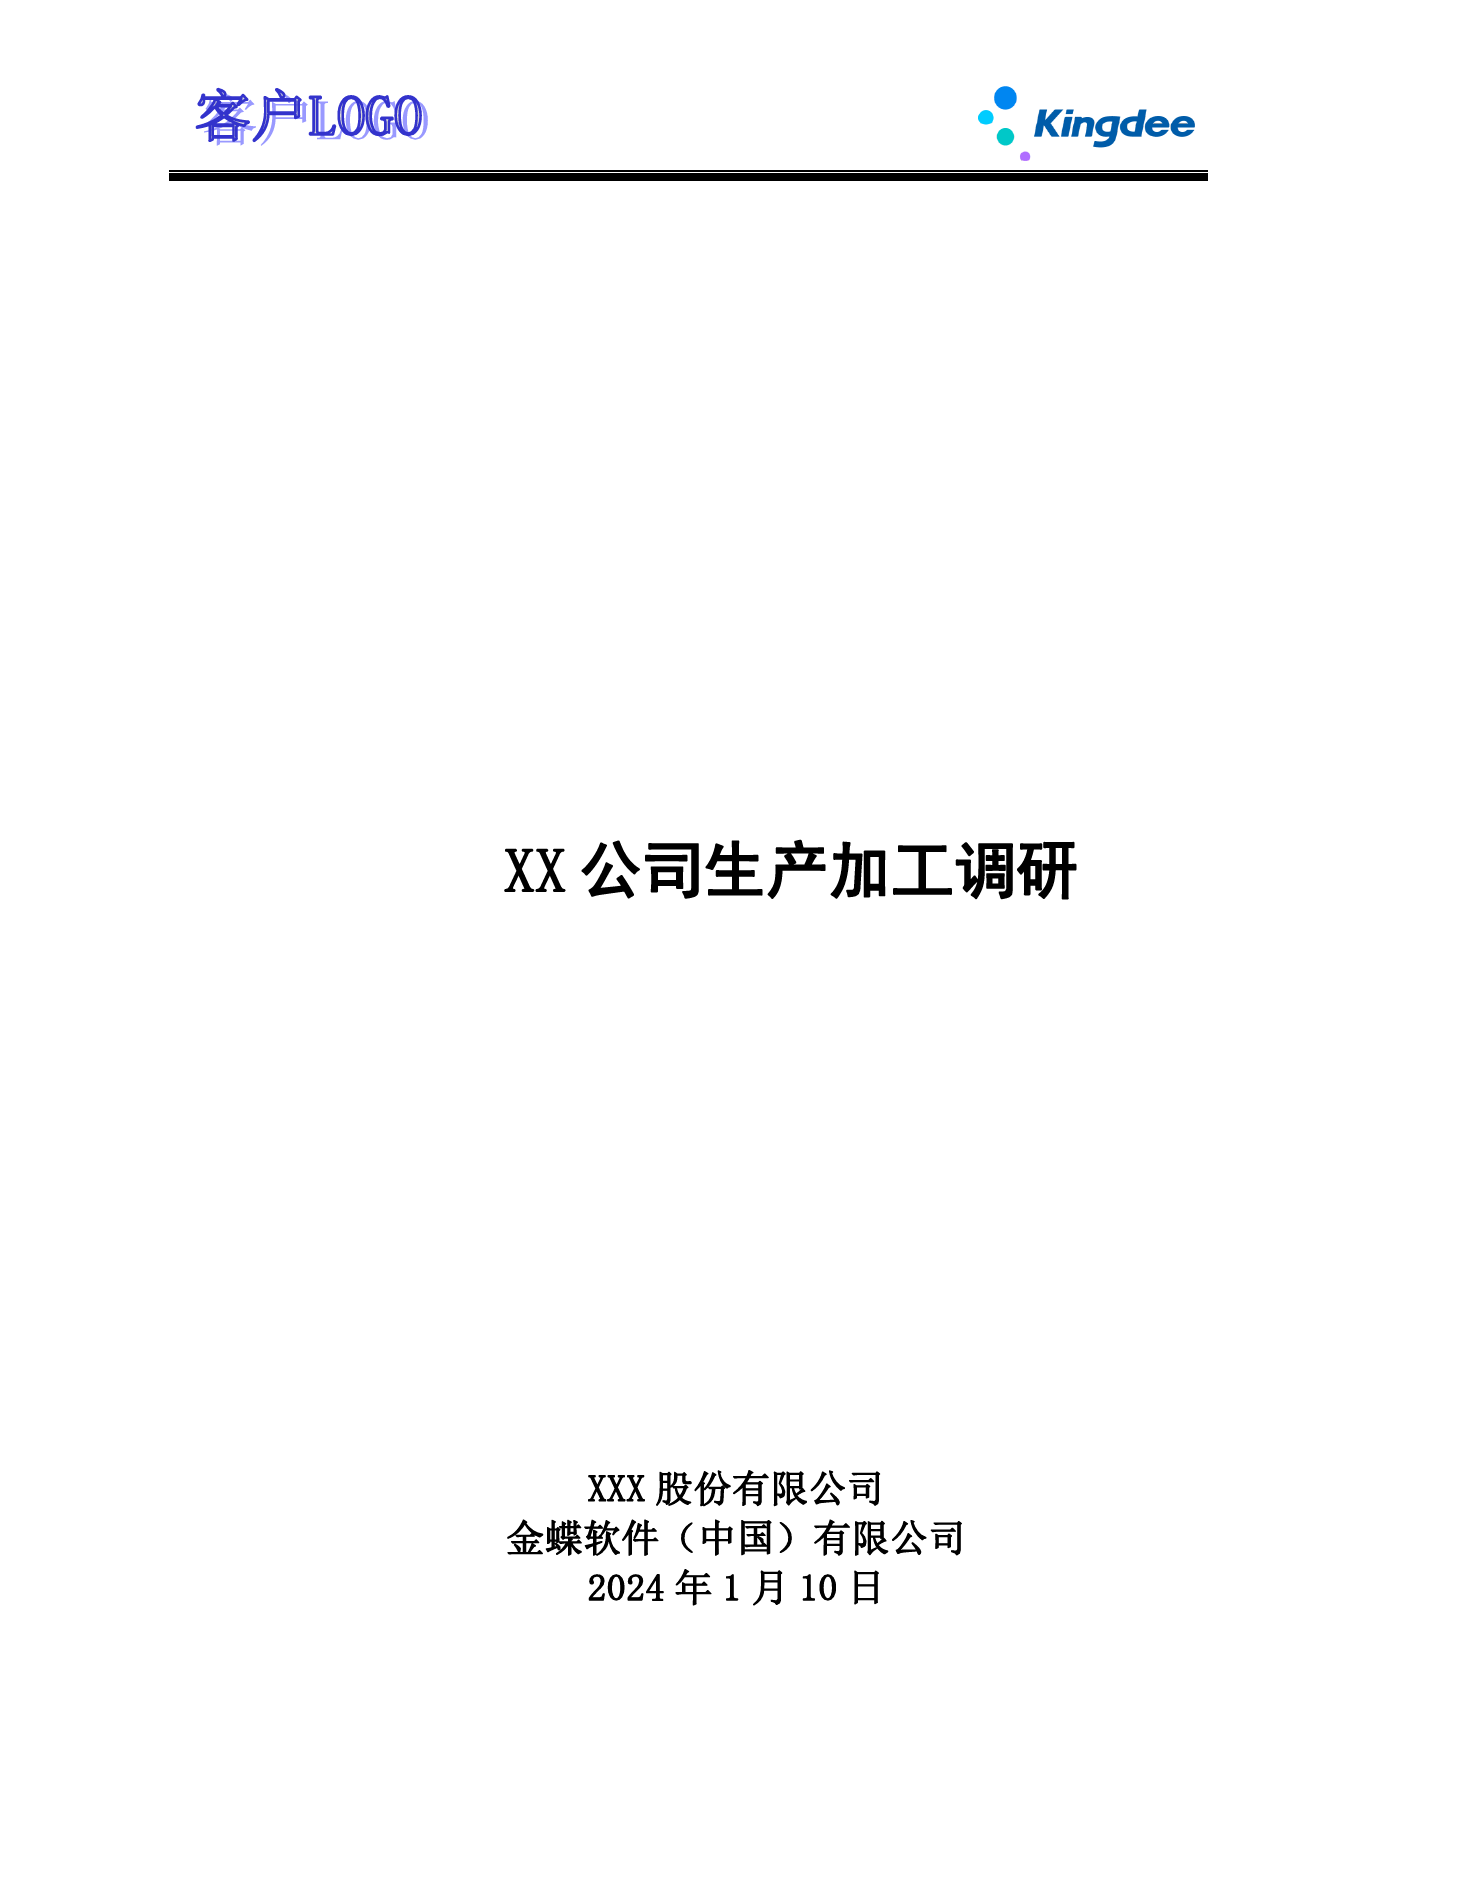 金蝶云社区-ECY2204 调研问卷 _生产加工V2.0